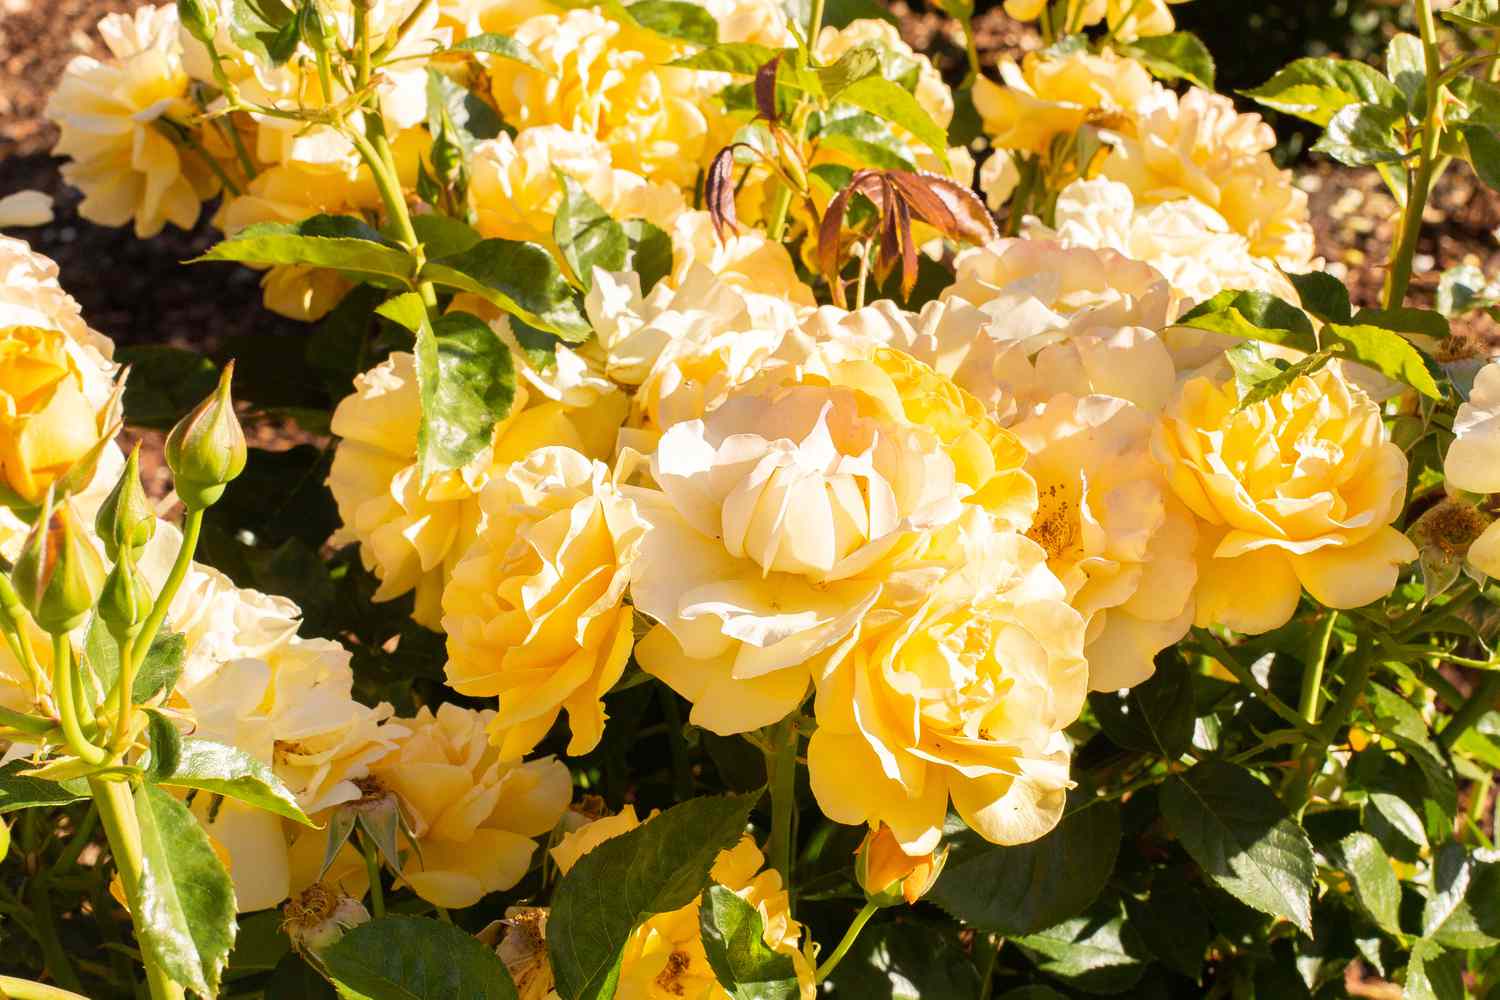 Julia Child Rosen mit dichten gelben Blütenblättern und Knospen am Rosenstrauch